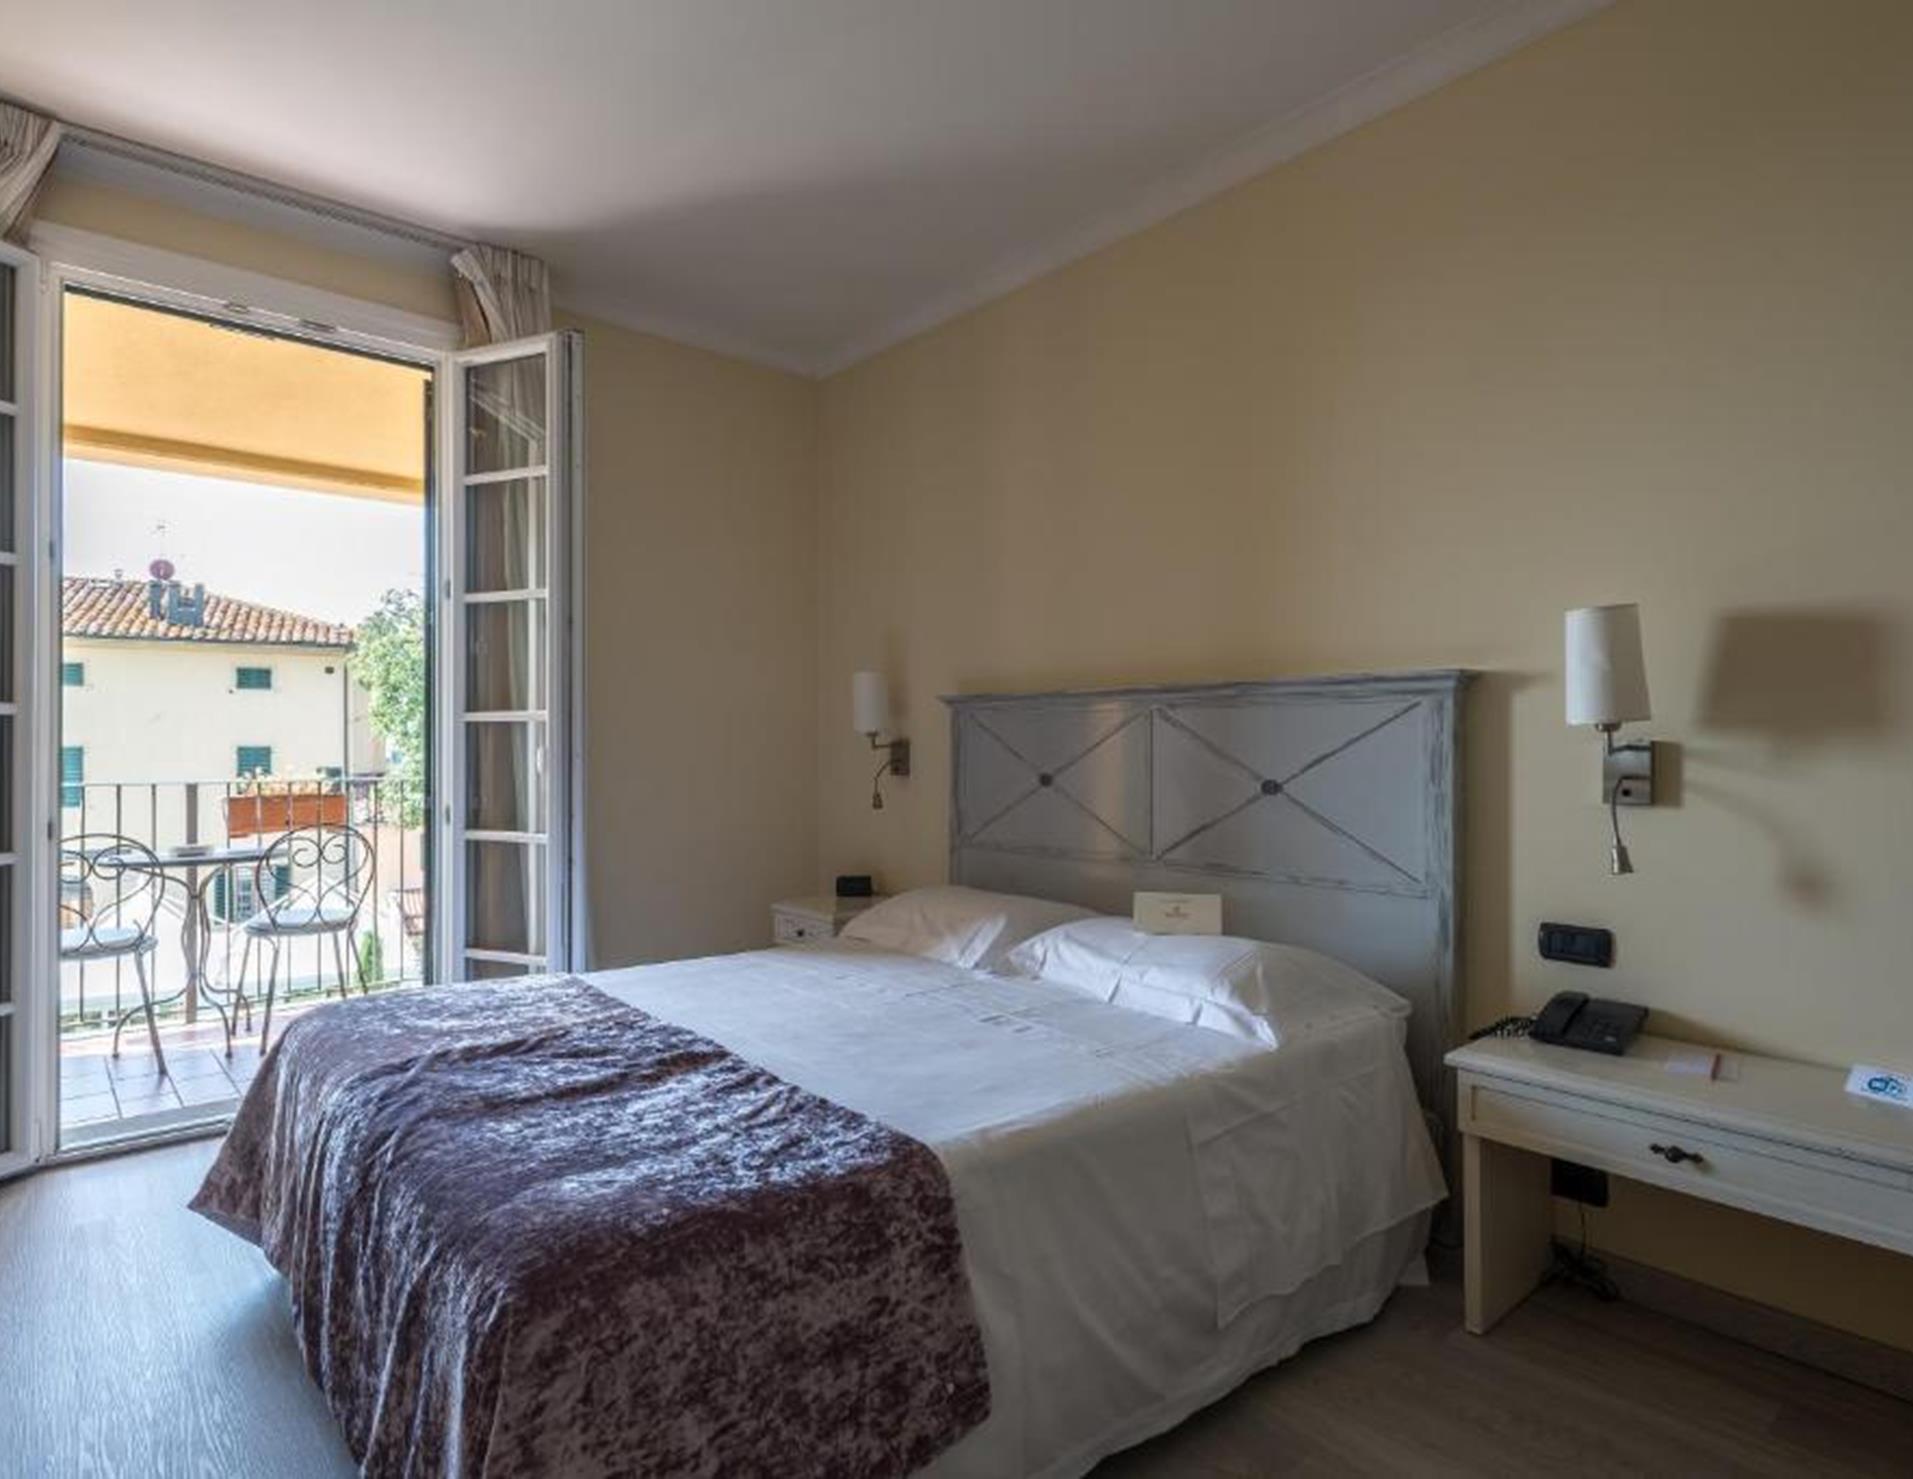 Hotel Villa Cappugi - Room 4